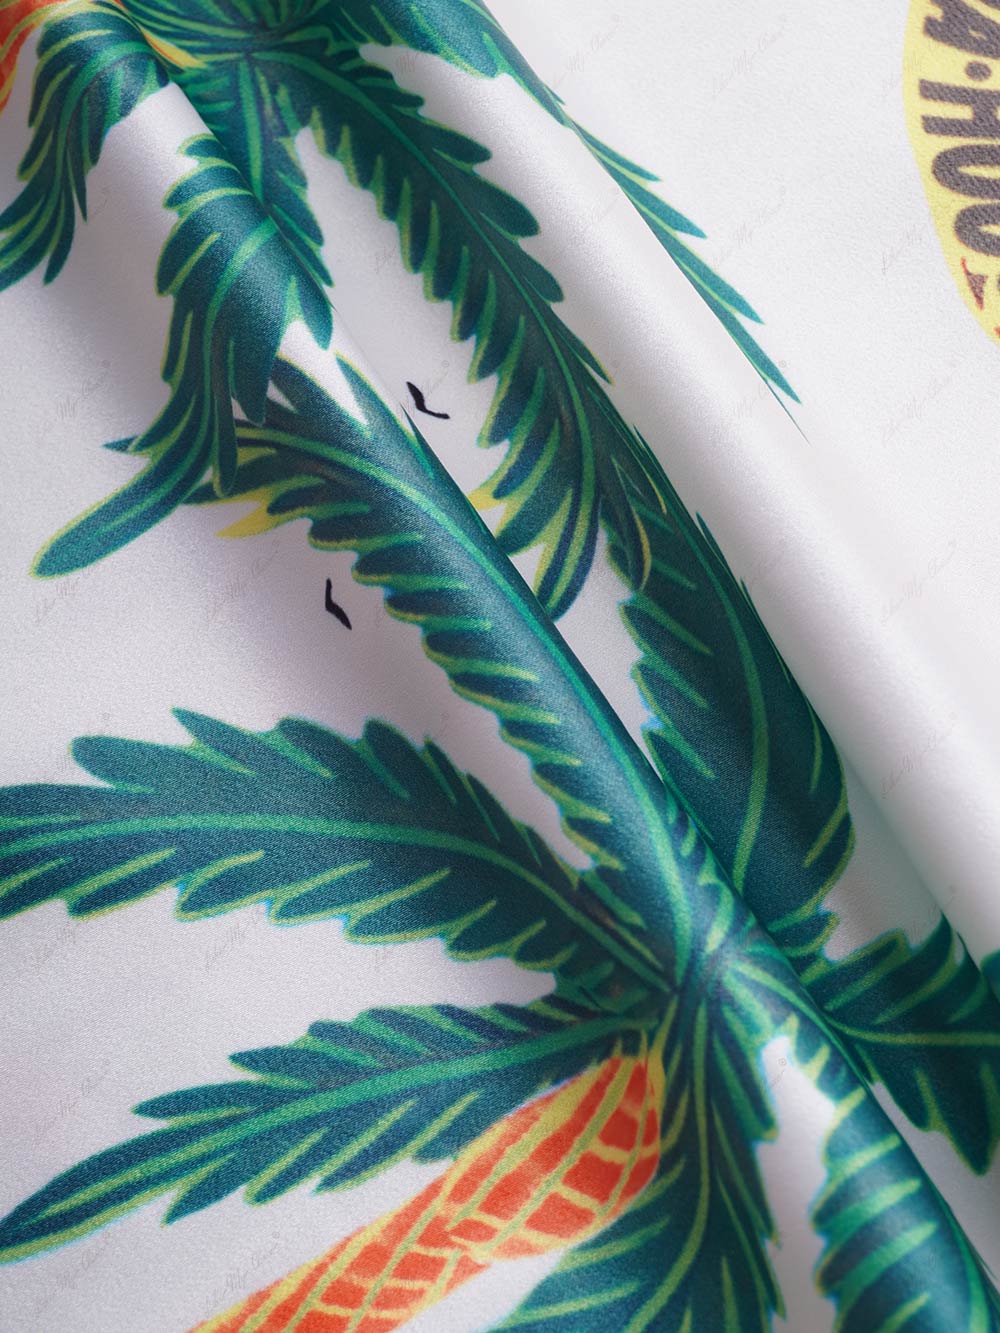 Παντελόνι Sunny Beach Summer Style printed